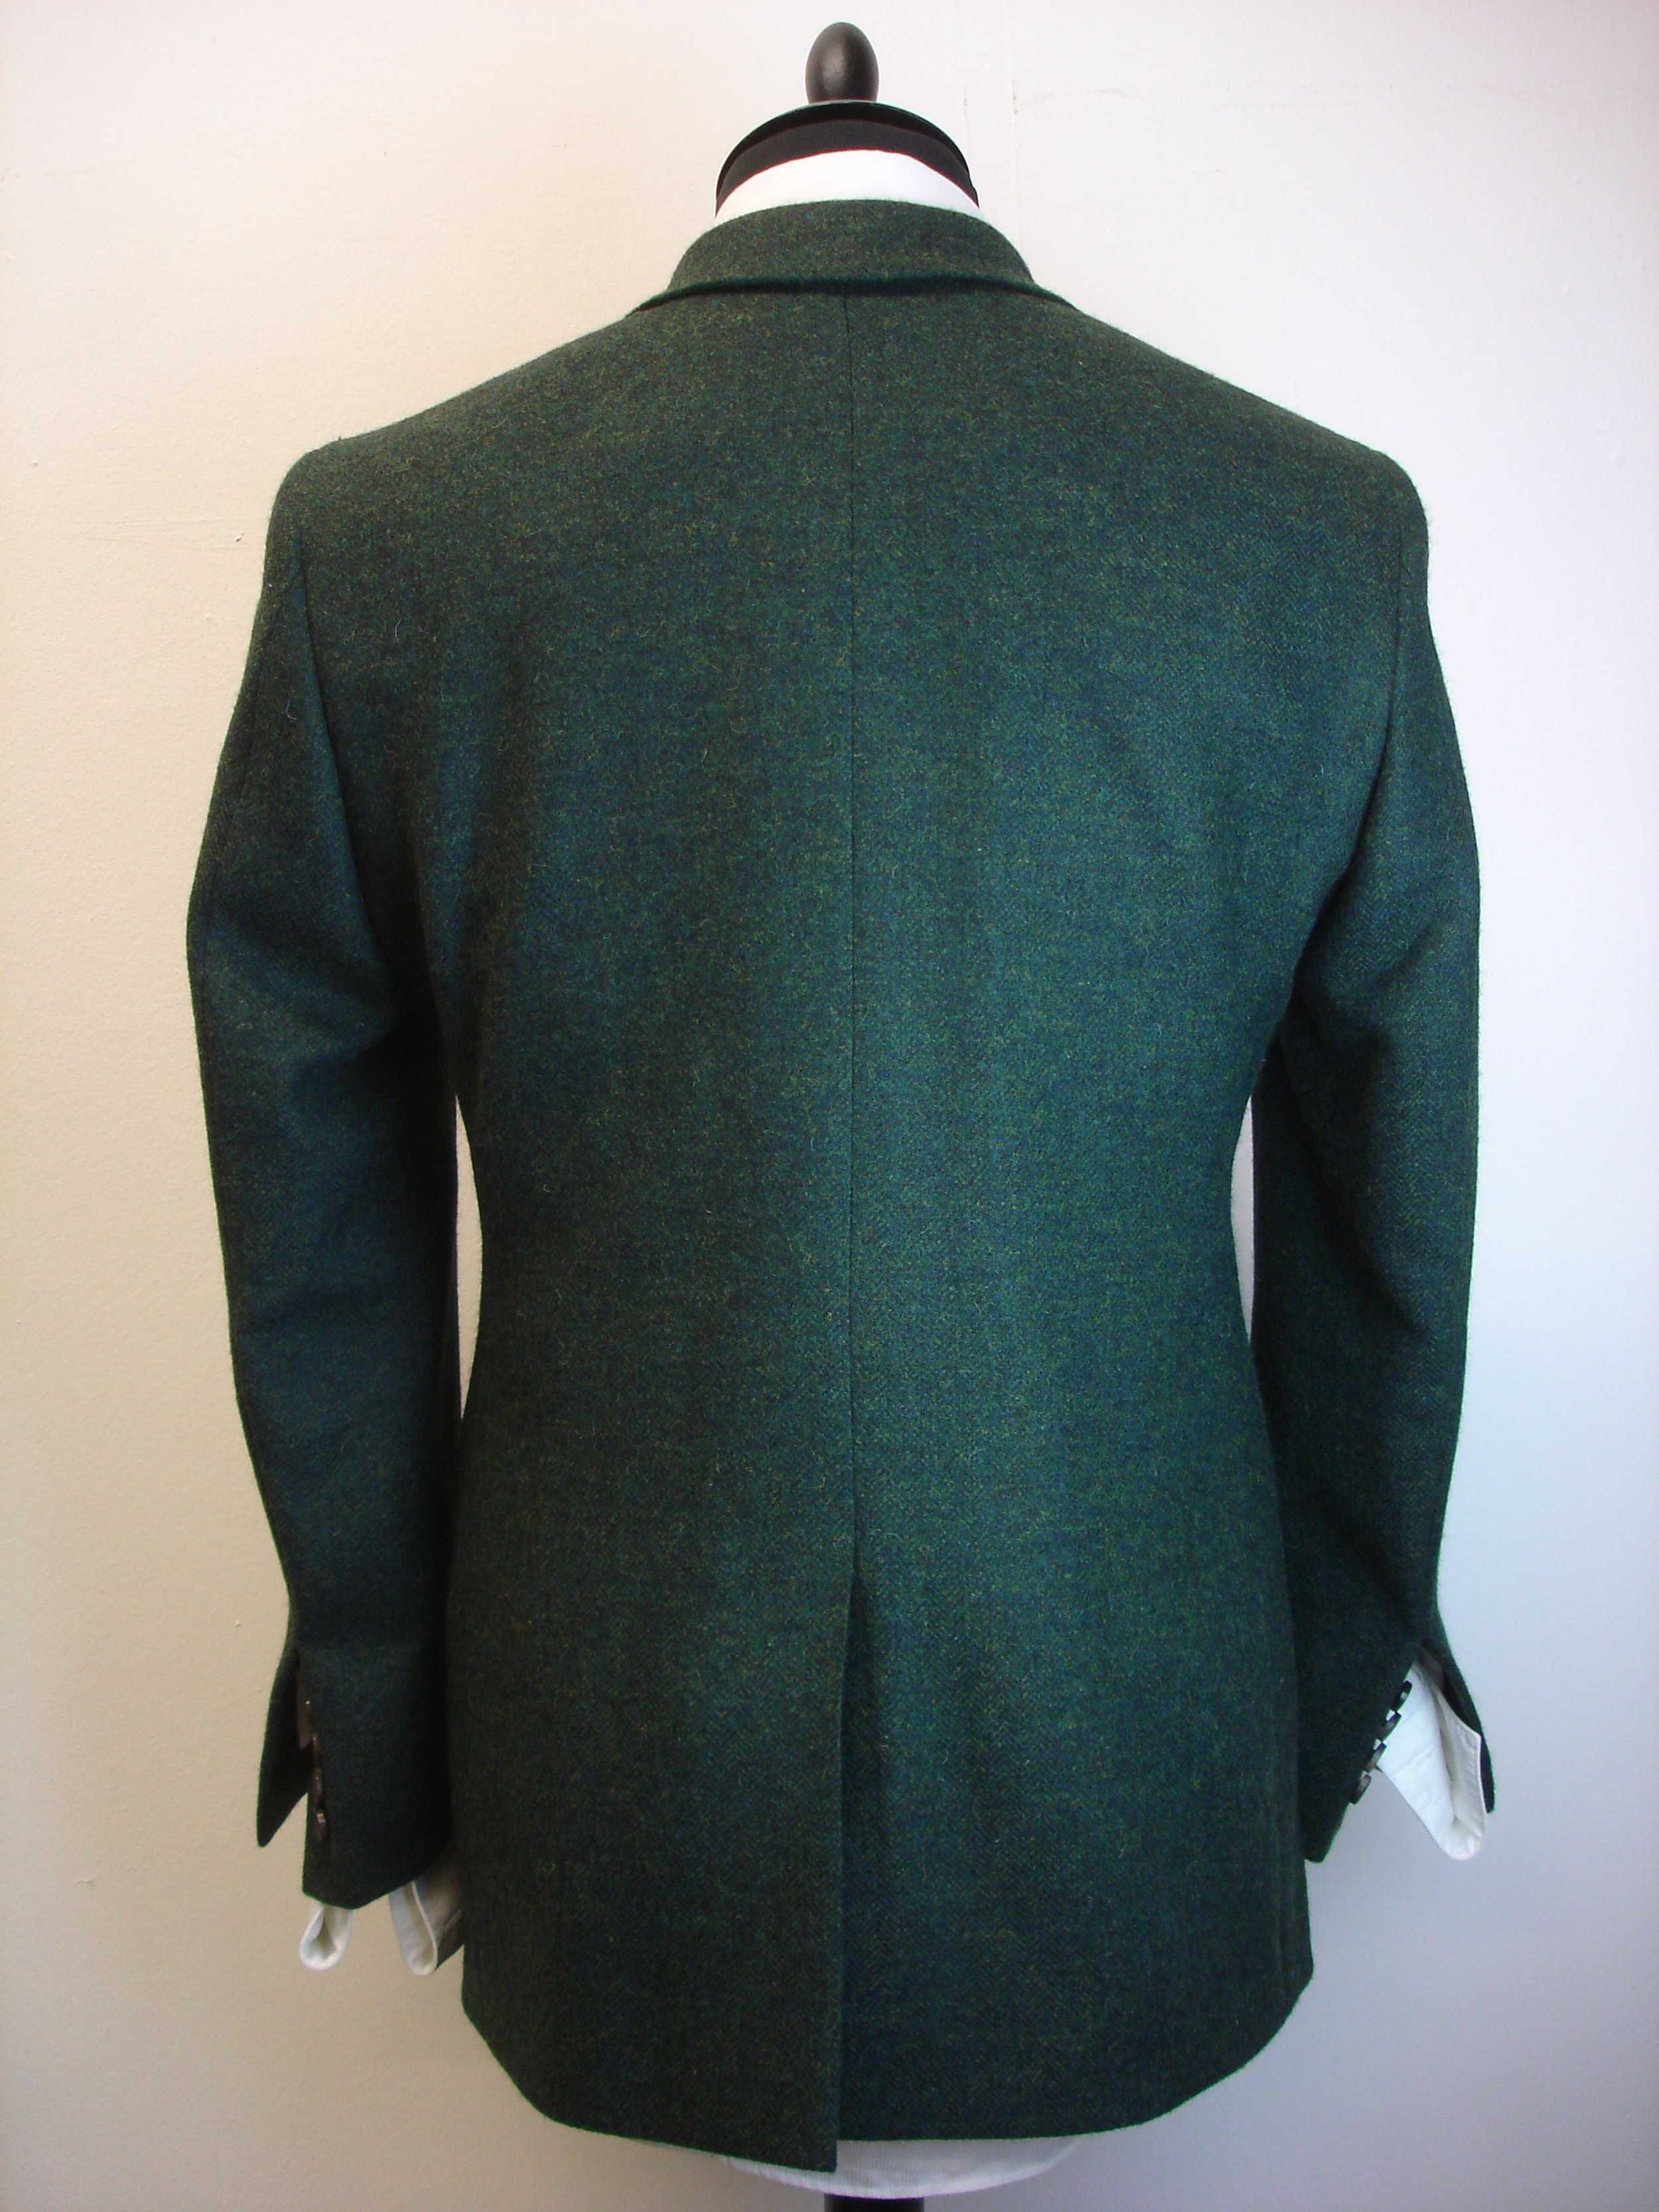 3 piece suit in green yorkshire herringbone tweed (19).JPG